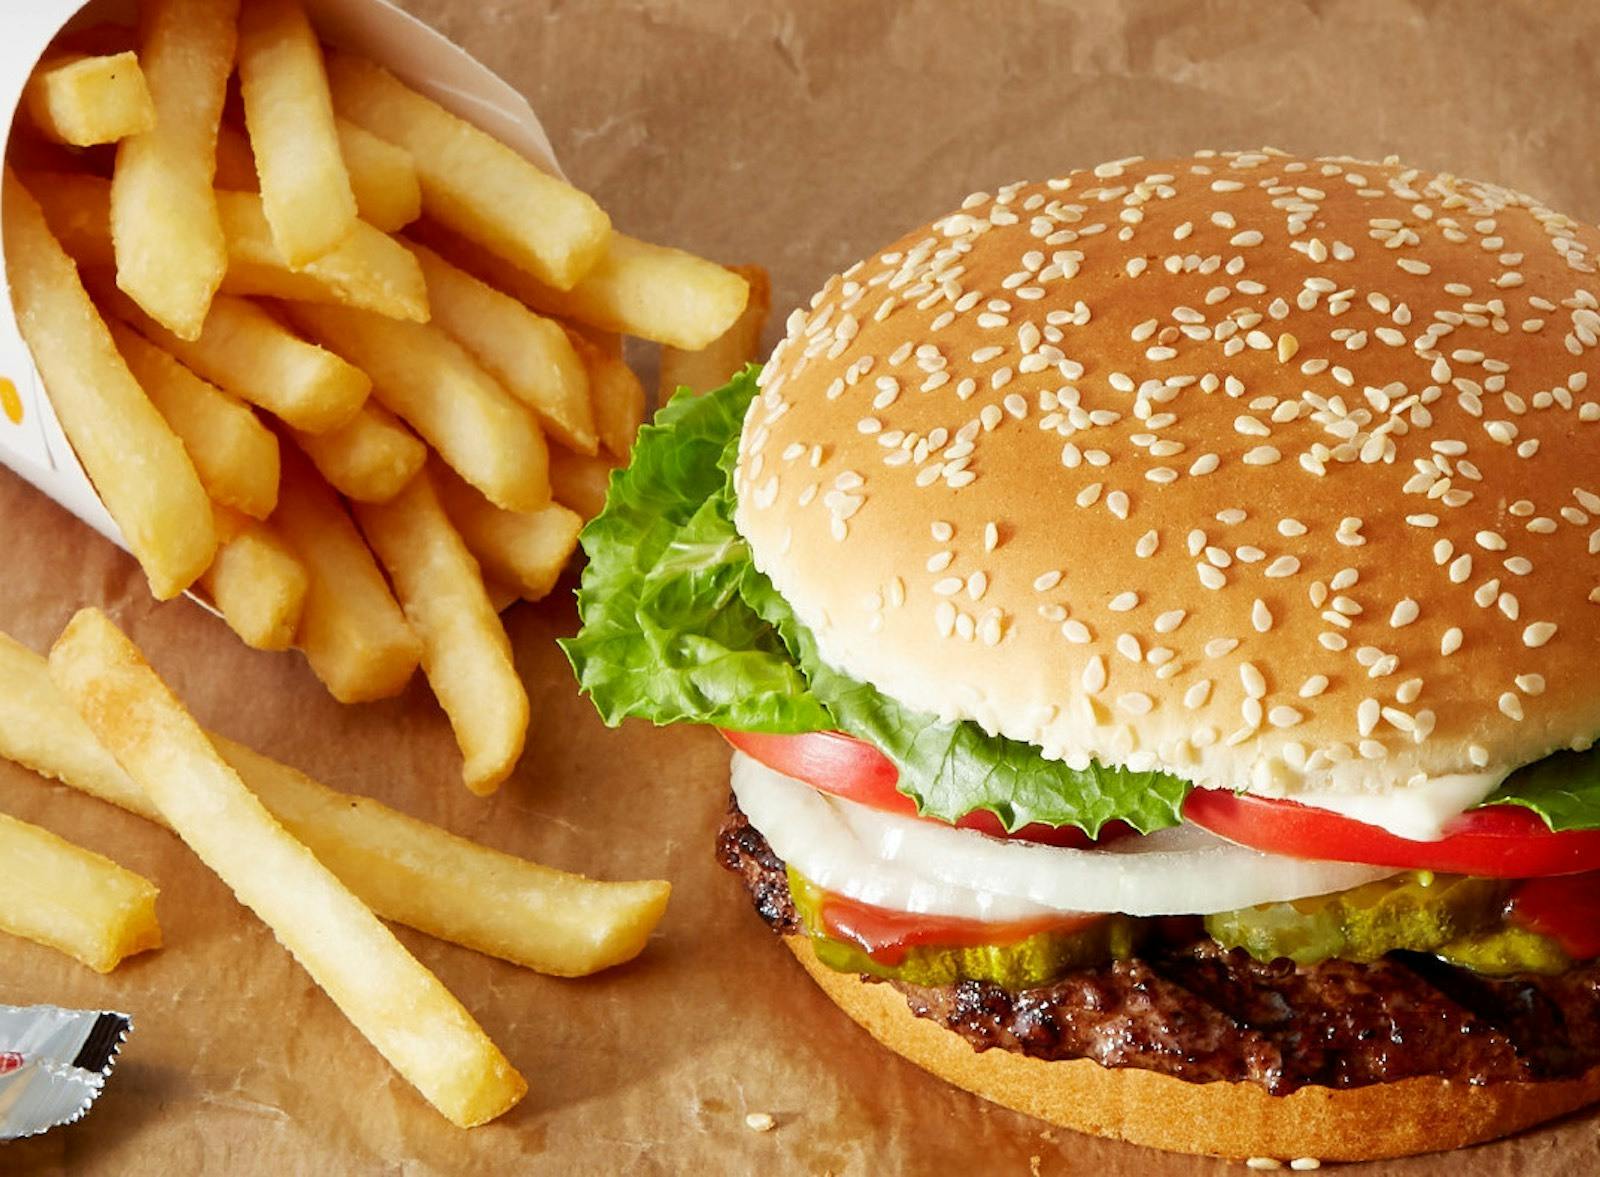 Burger King - Onalaska in La Crosse - Highlight